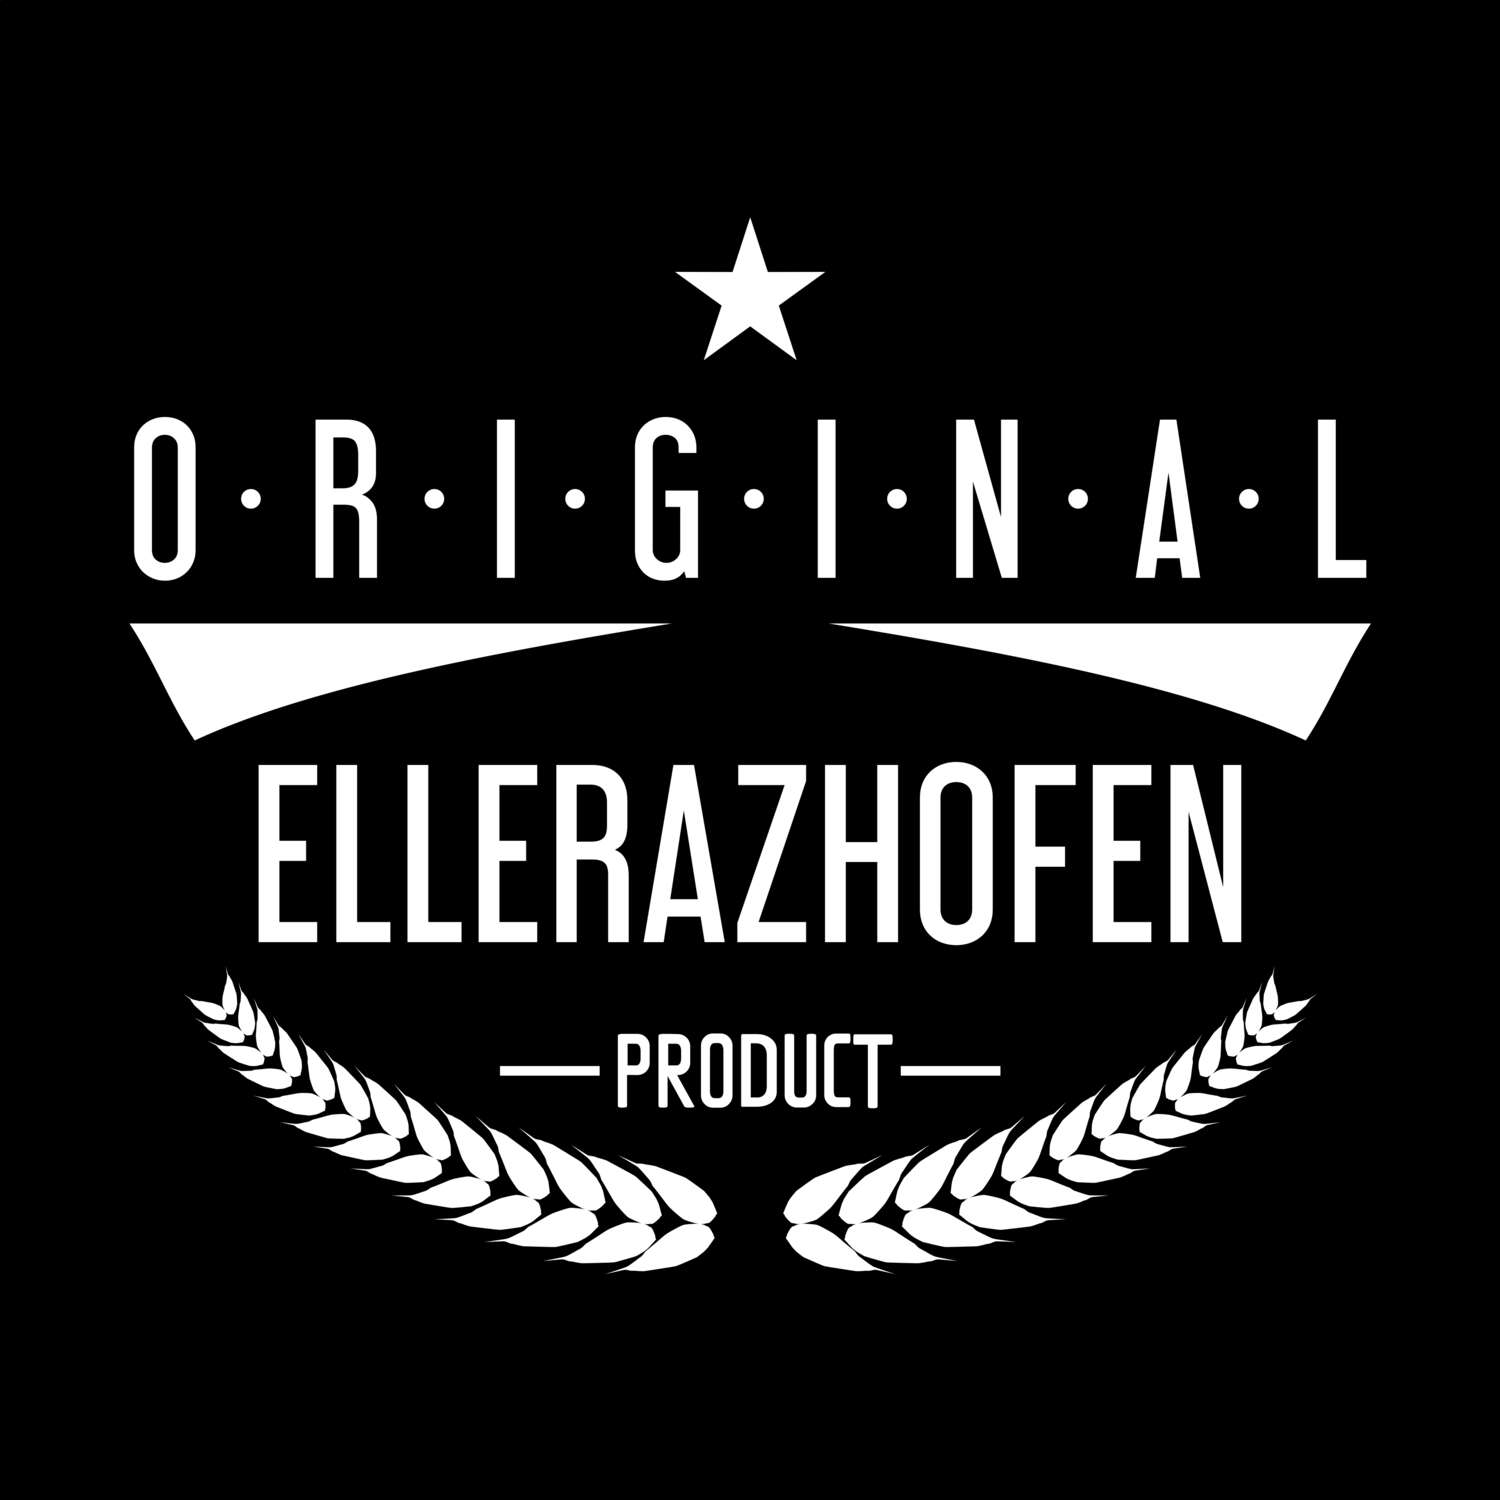 Ellerazhofen T-Shirt »Original Product«